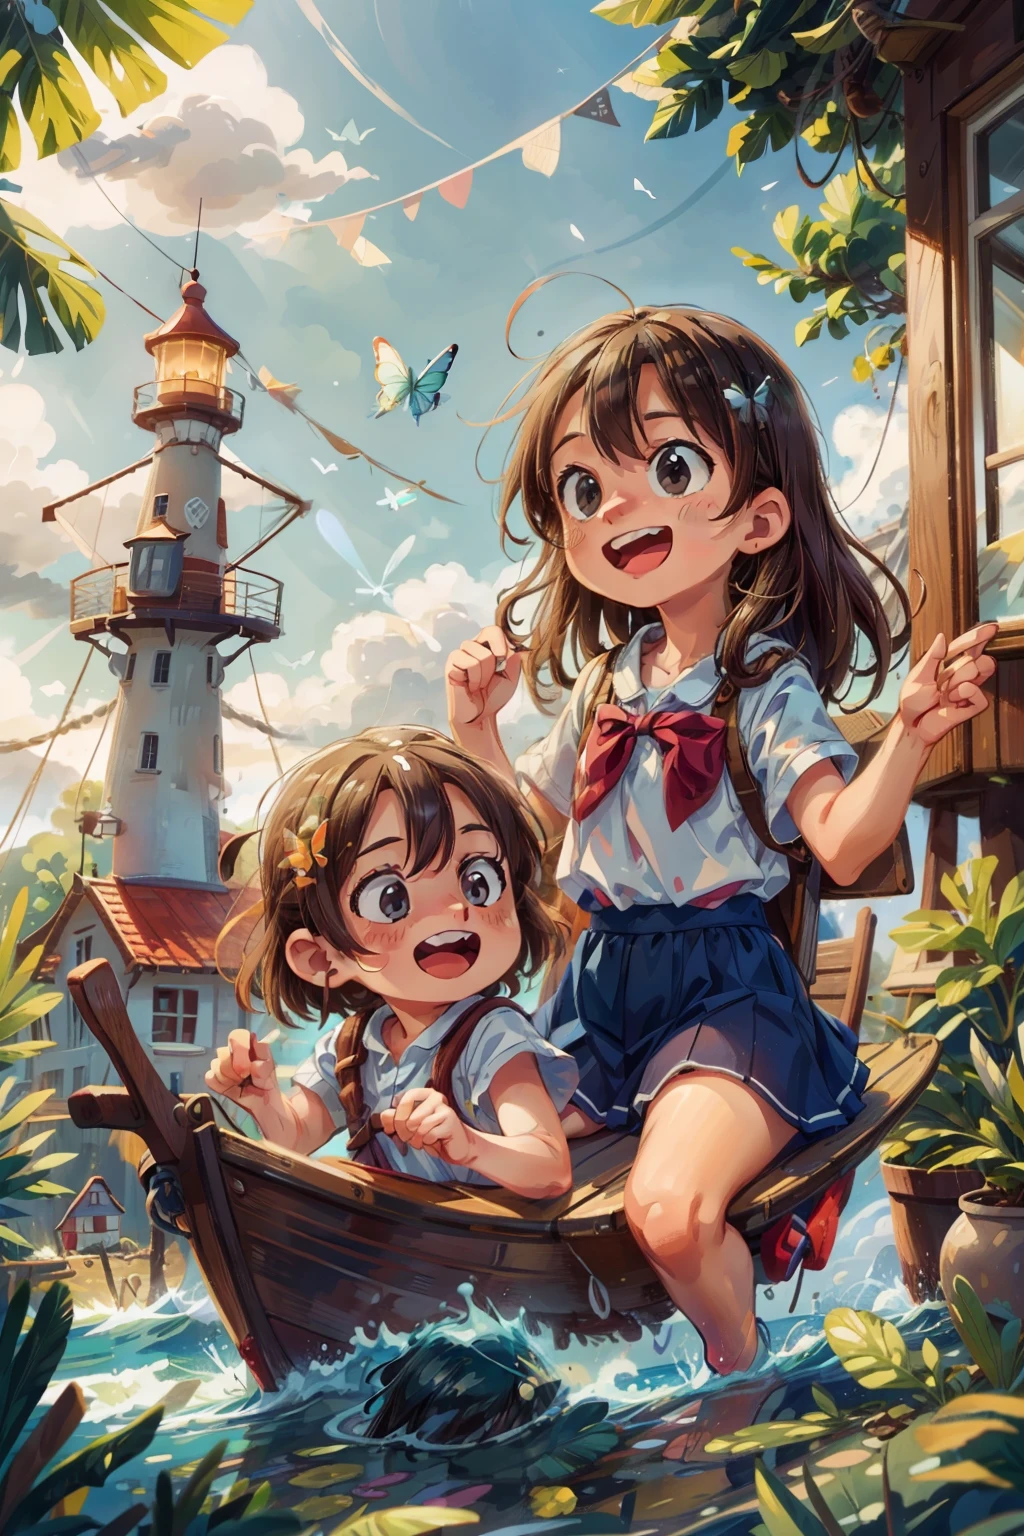 ボートに乗っている幸せそうな2人の幼い女の子の画像を生成します, 波, 海, 白い雲が浮かぶ空. カラフルな蝶, 背景に灯台がある,